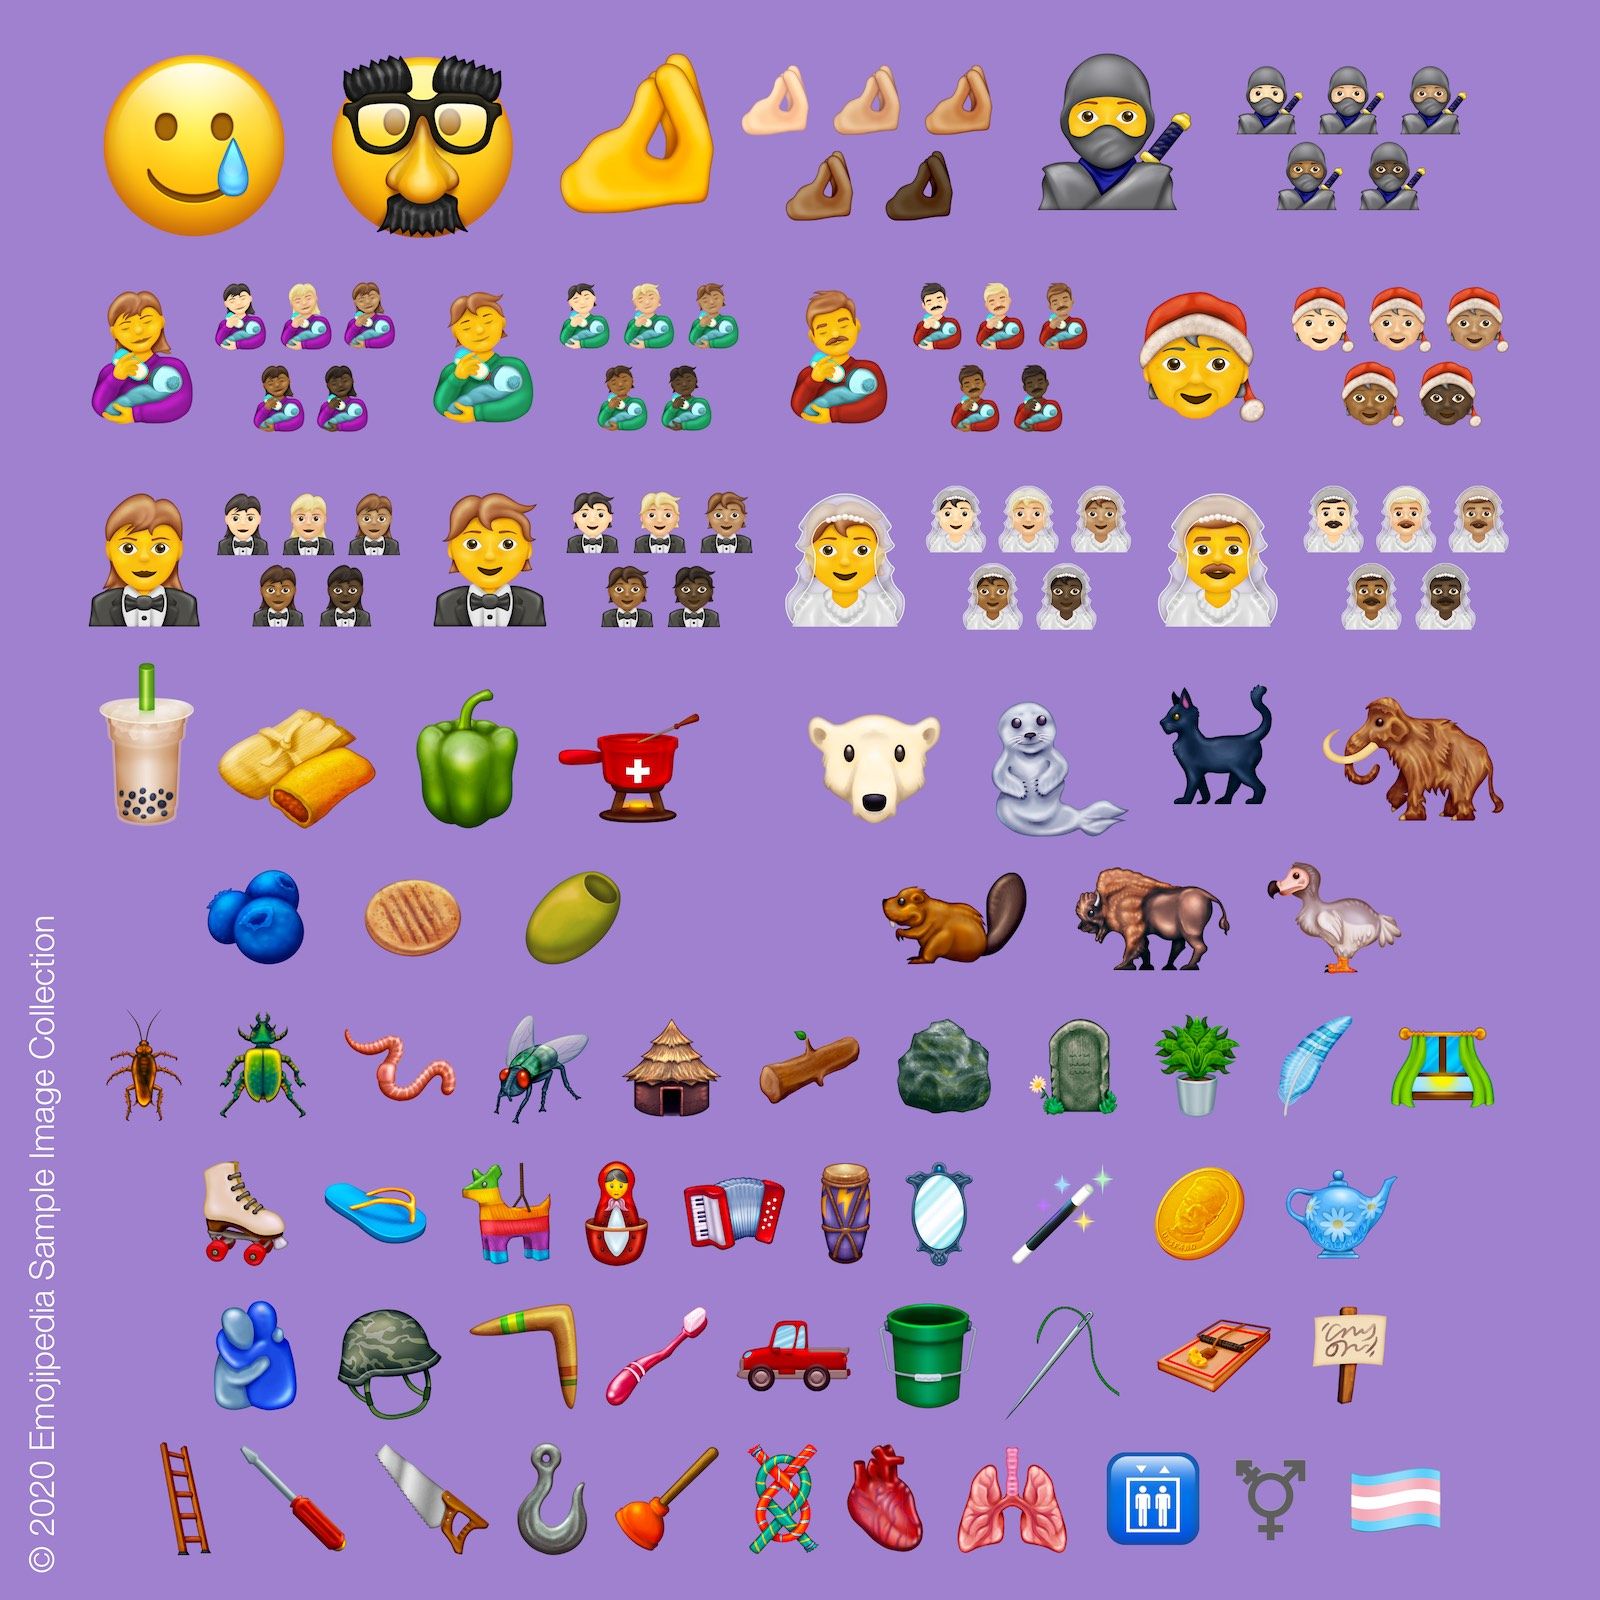 Koleksi Gambar Sampel Emojipedia 2020